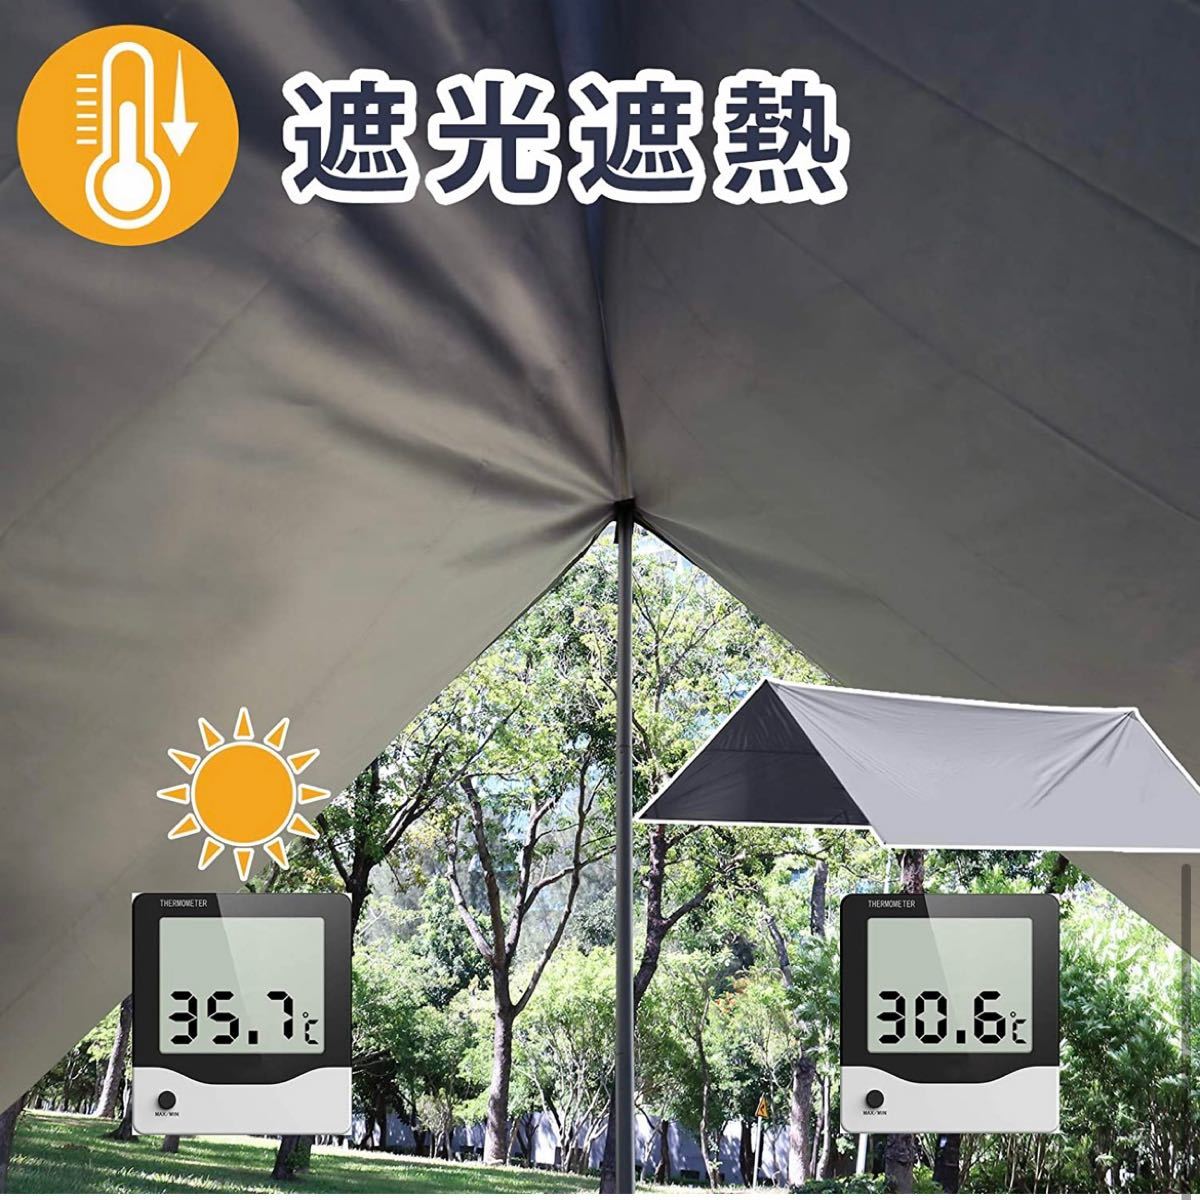 【新品】 タープ テント 3×4 防水 UVカット 遮熱 軽量 コンパク ワンタッチテント タープテント アウトドア用品